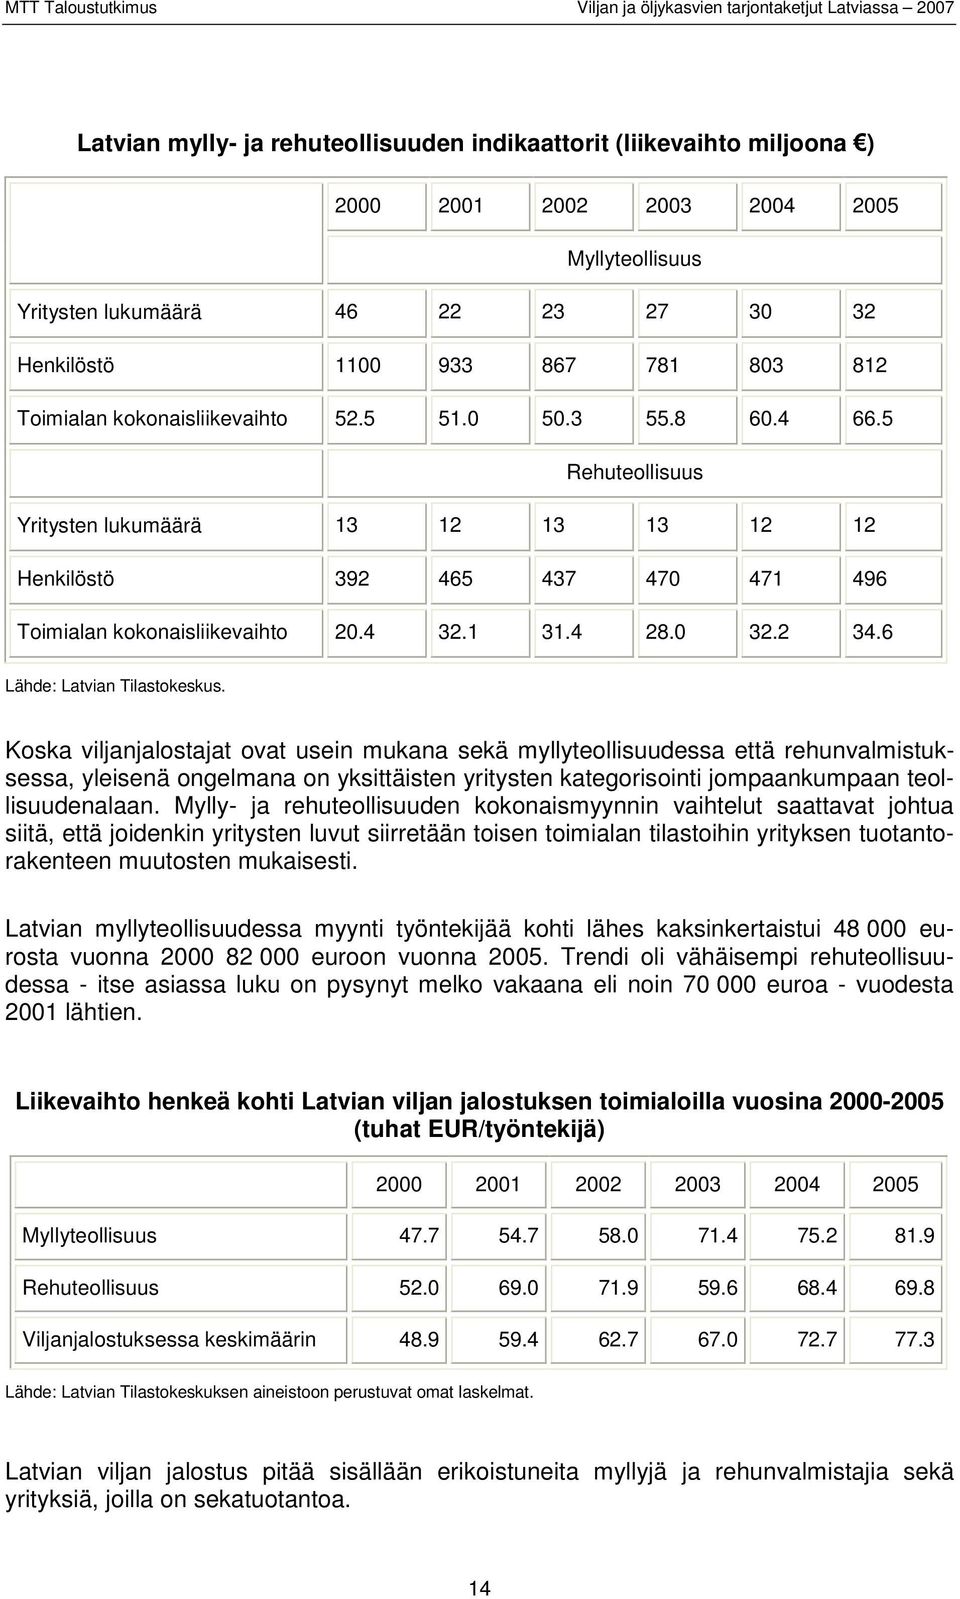 0 32.2 34.6 Lähde: Latvian Tilastokeskus.